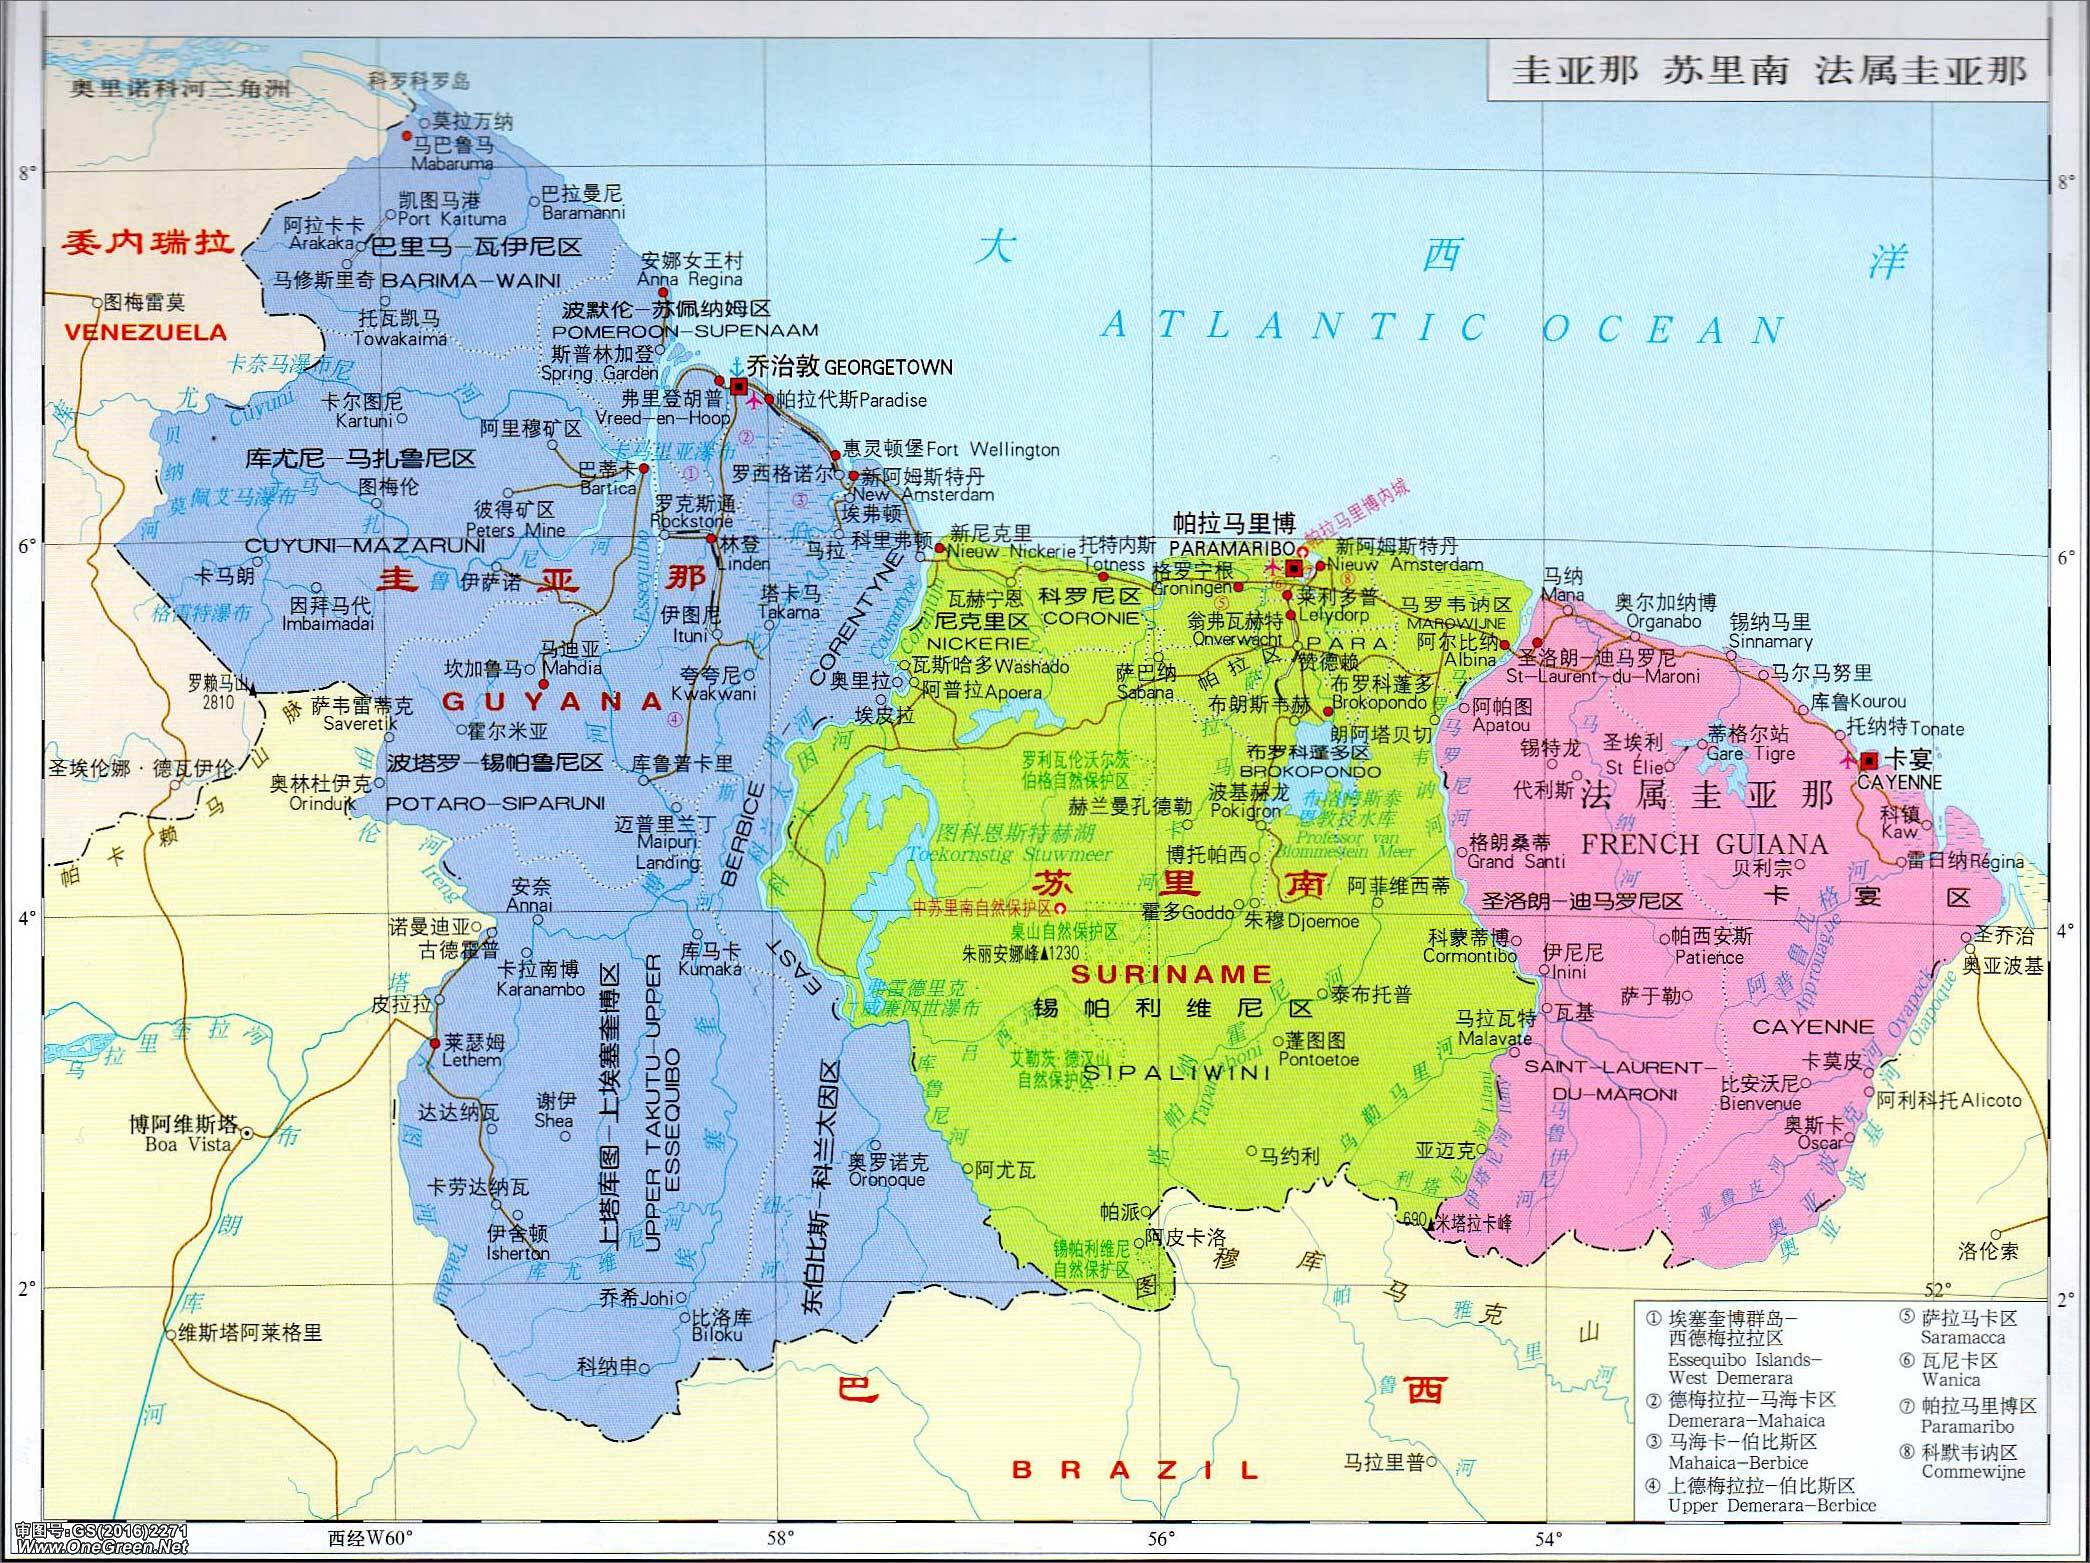 委内瑞拉地图,圭亚那地图,苏里南地图,法属圭亚